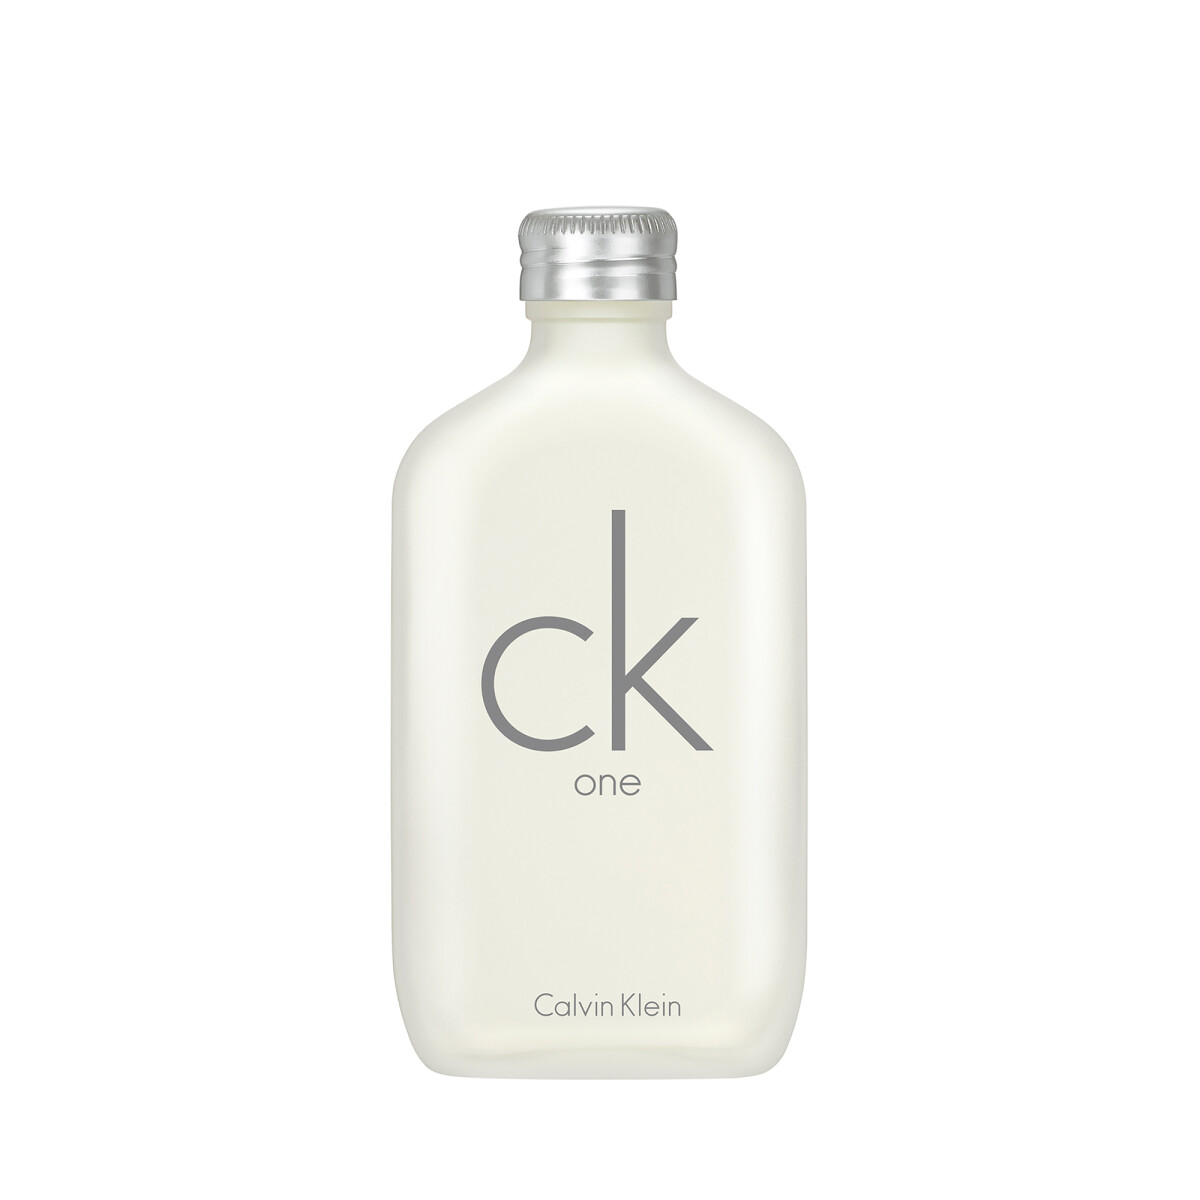 Perfume Calvin Klein One 100 ml Edt 